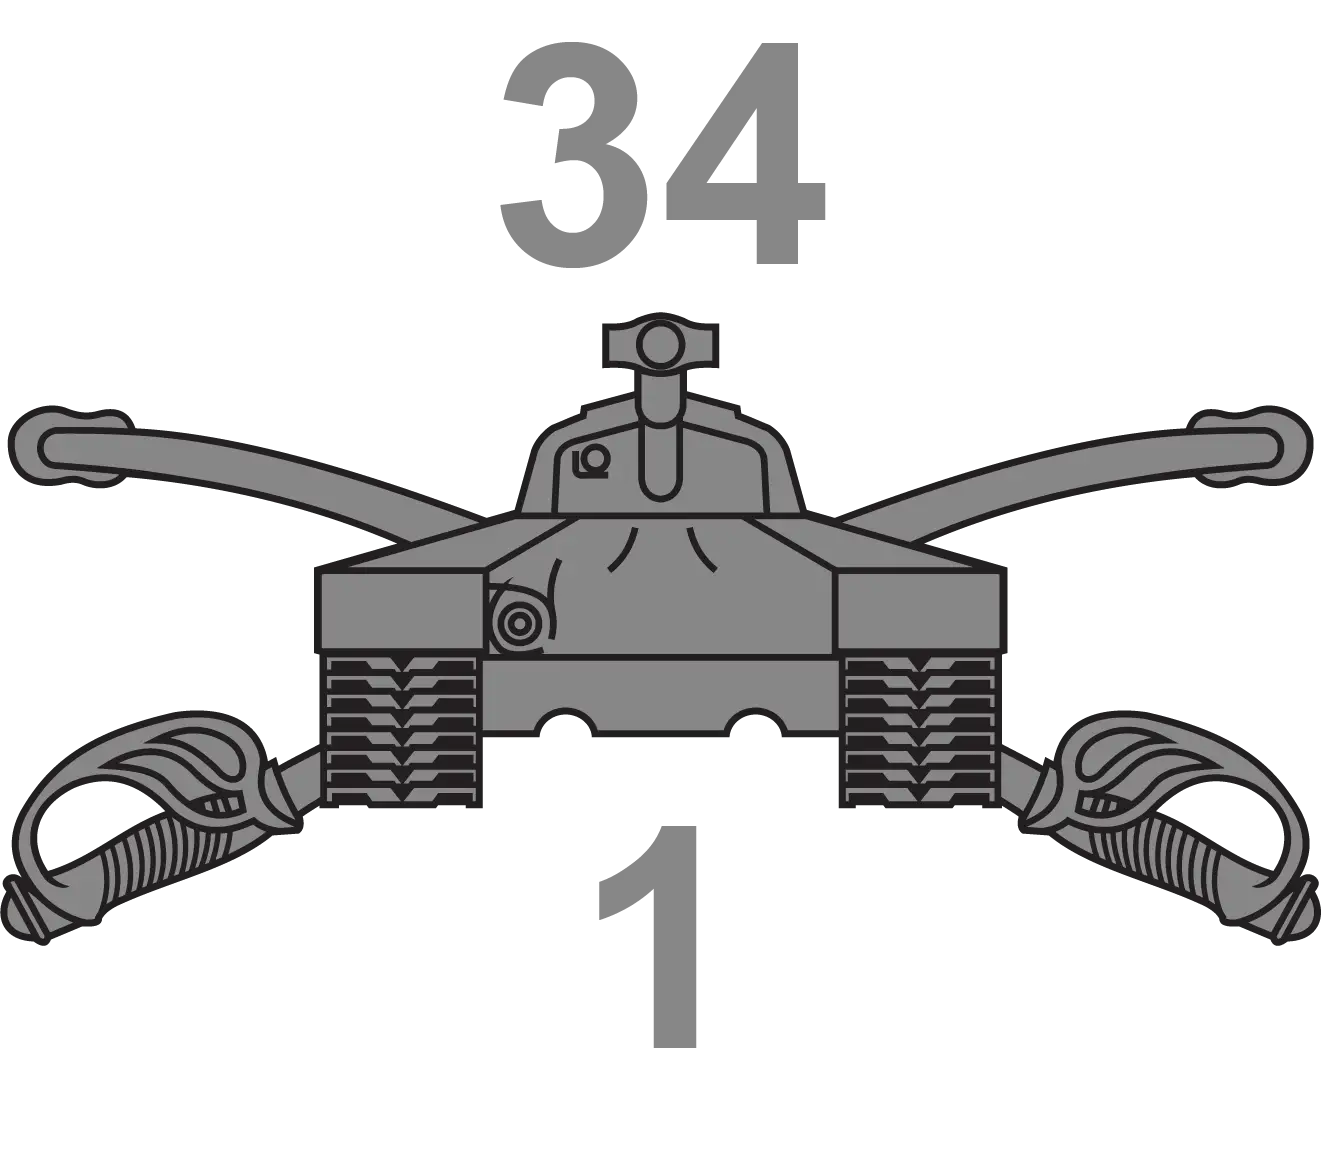 1-34 Armor Regiment